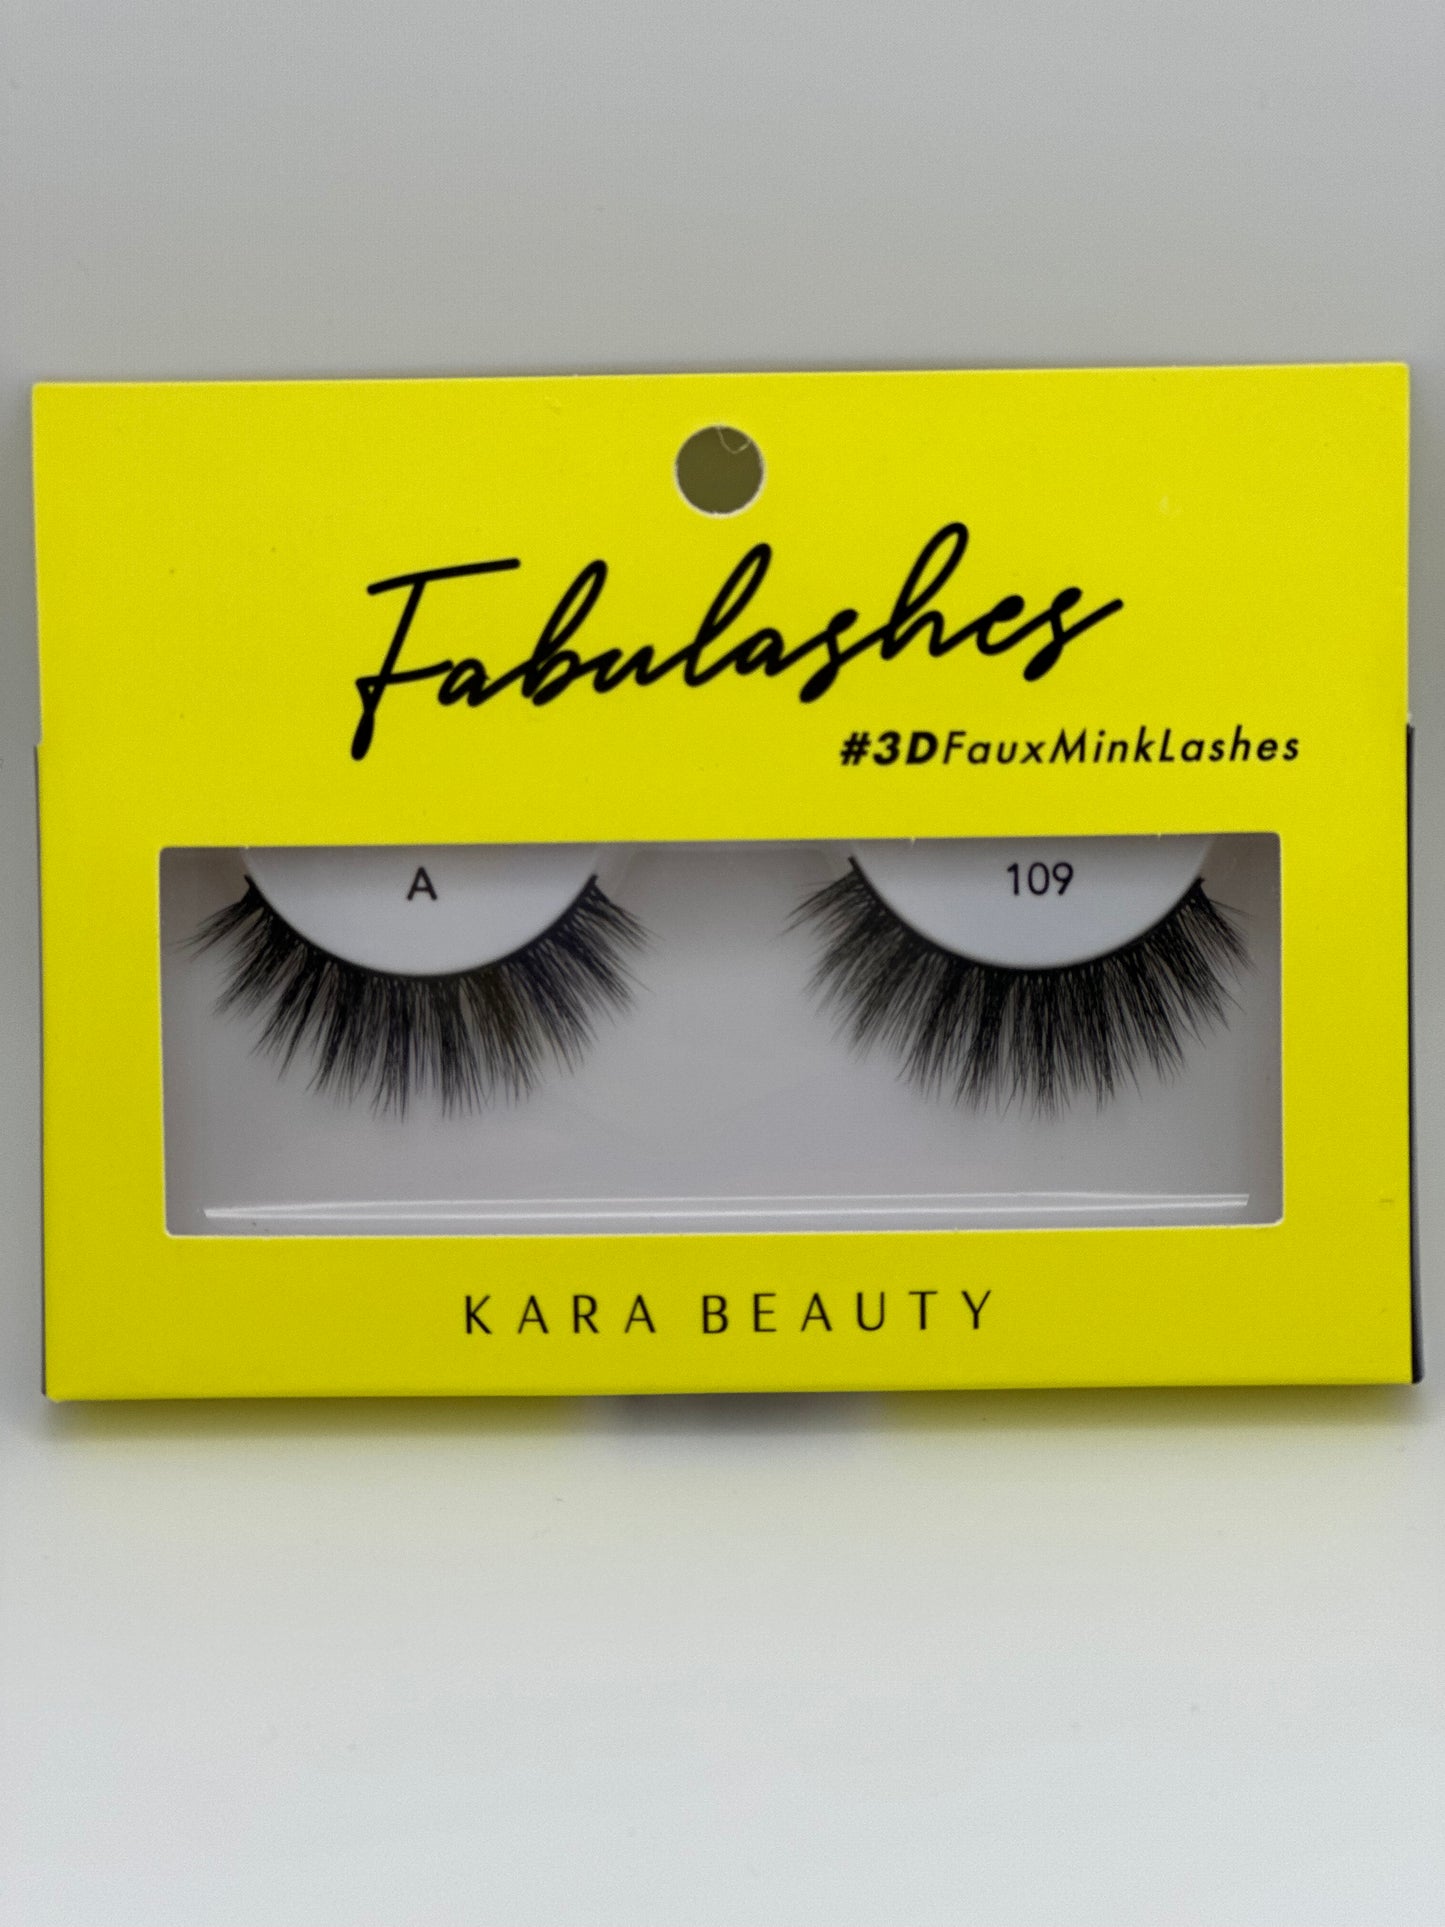 Kara Beauty Fabulashes #3D FauxMinkLashes